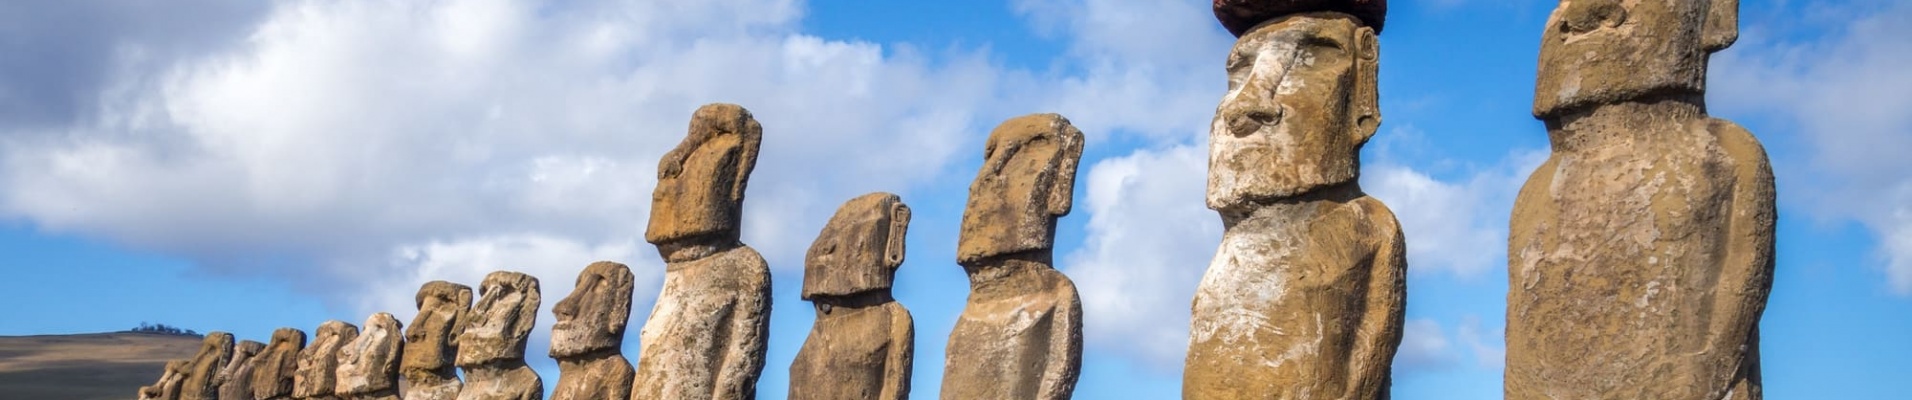 Statues Moais, ahu Tongariki, Ile de Paques, Chili